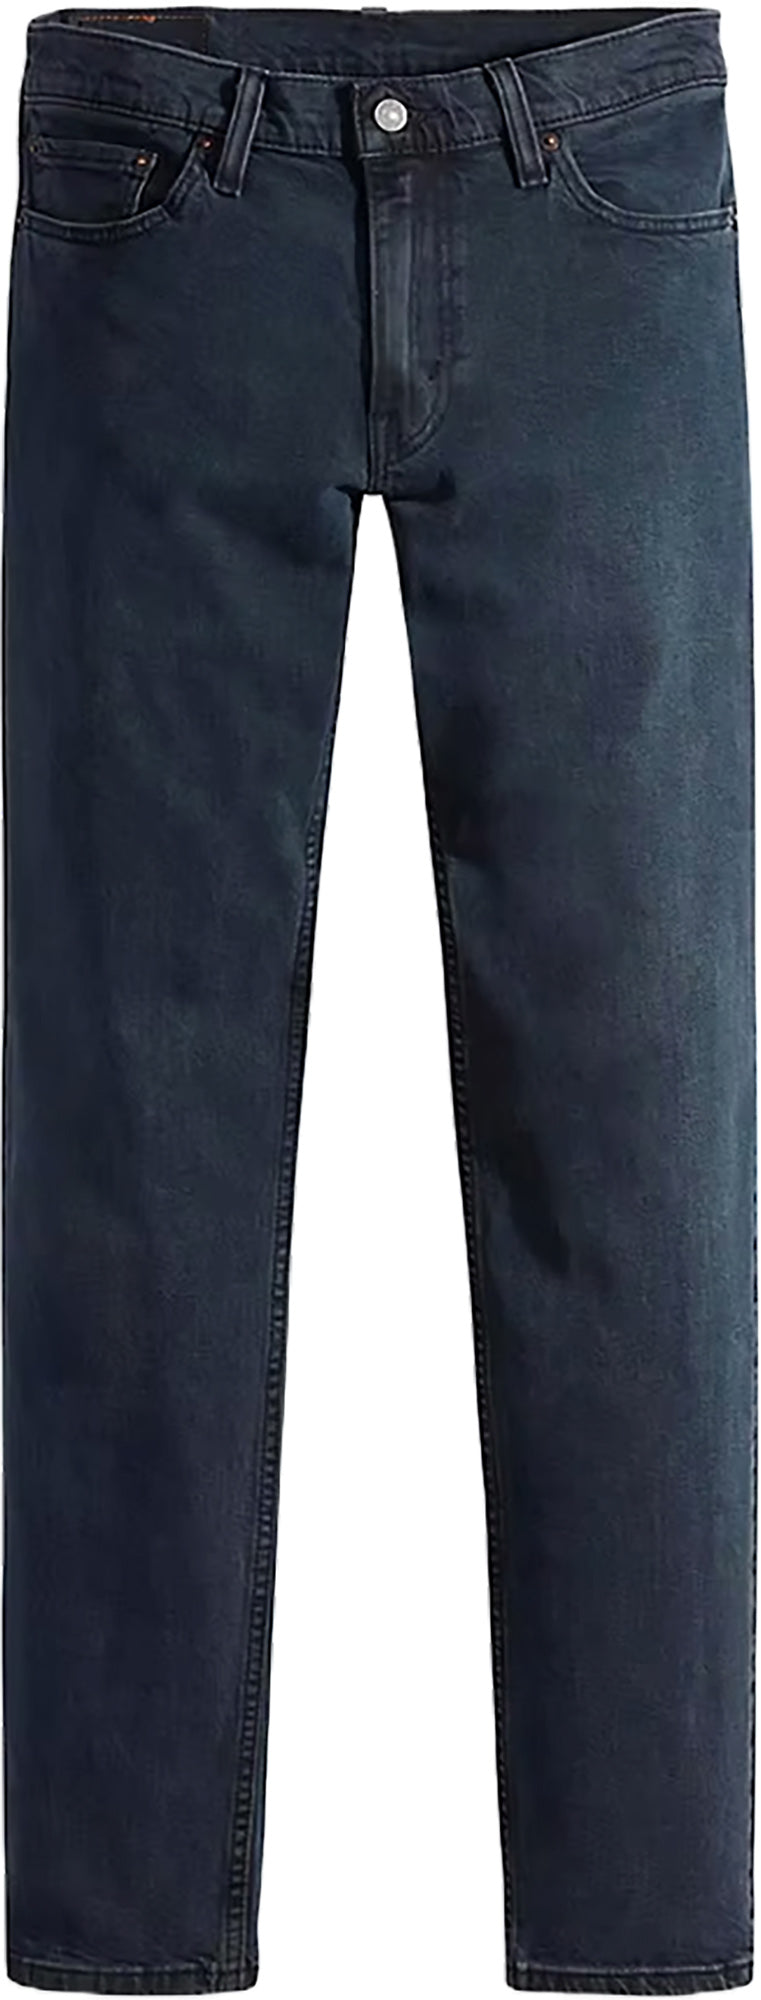 Levi's 511 Slim Fit Flex Jeans - Men's